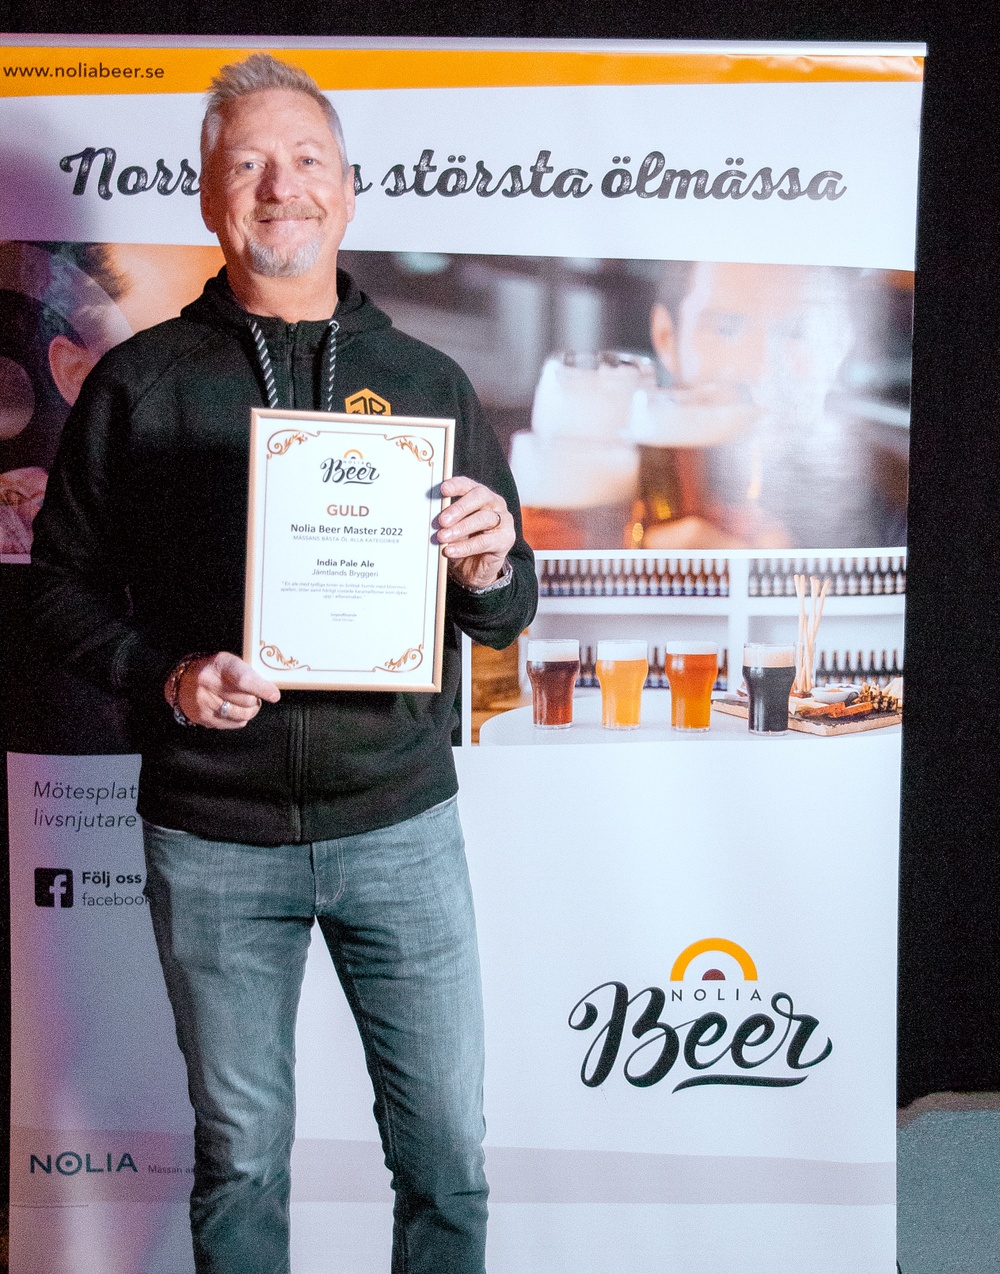 Anders Thelenius, vd på Jämtlands Bryggeri, tog emot diplomet för guld i Nolia Beer Master 2022 som innebär att de utsetts till bäst öl alla kategorier under Nolia Beers öltävling.Anders Thelenius Jämtlands Bryggeri